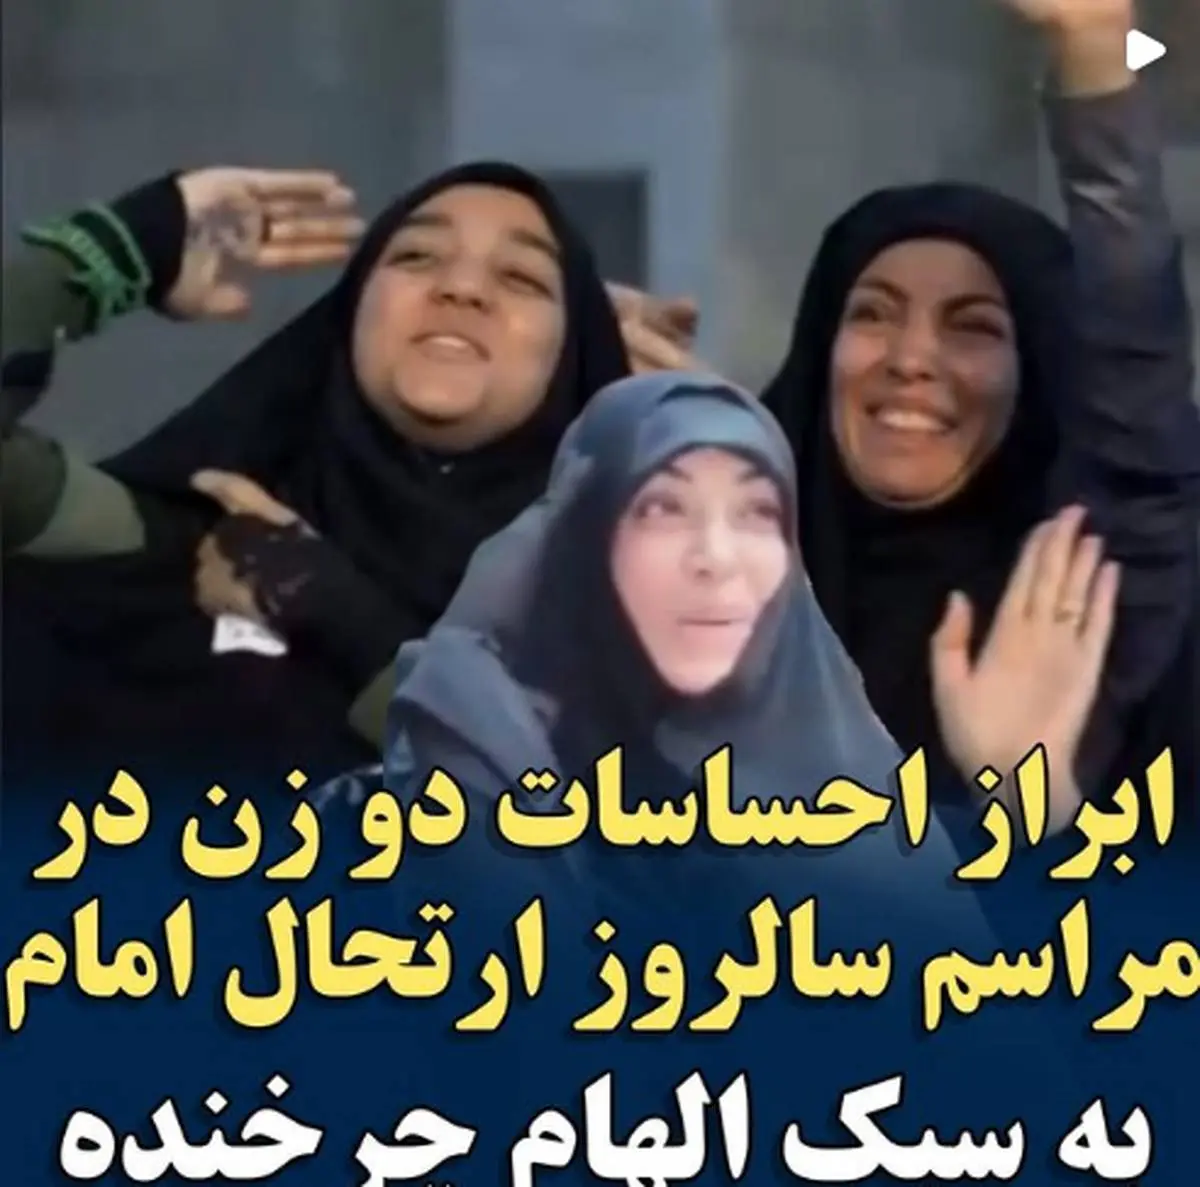 ببینید | ابراز احساسات دو زن در مراسم ارتحال امام به سبک الهام چرخنده